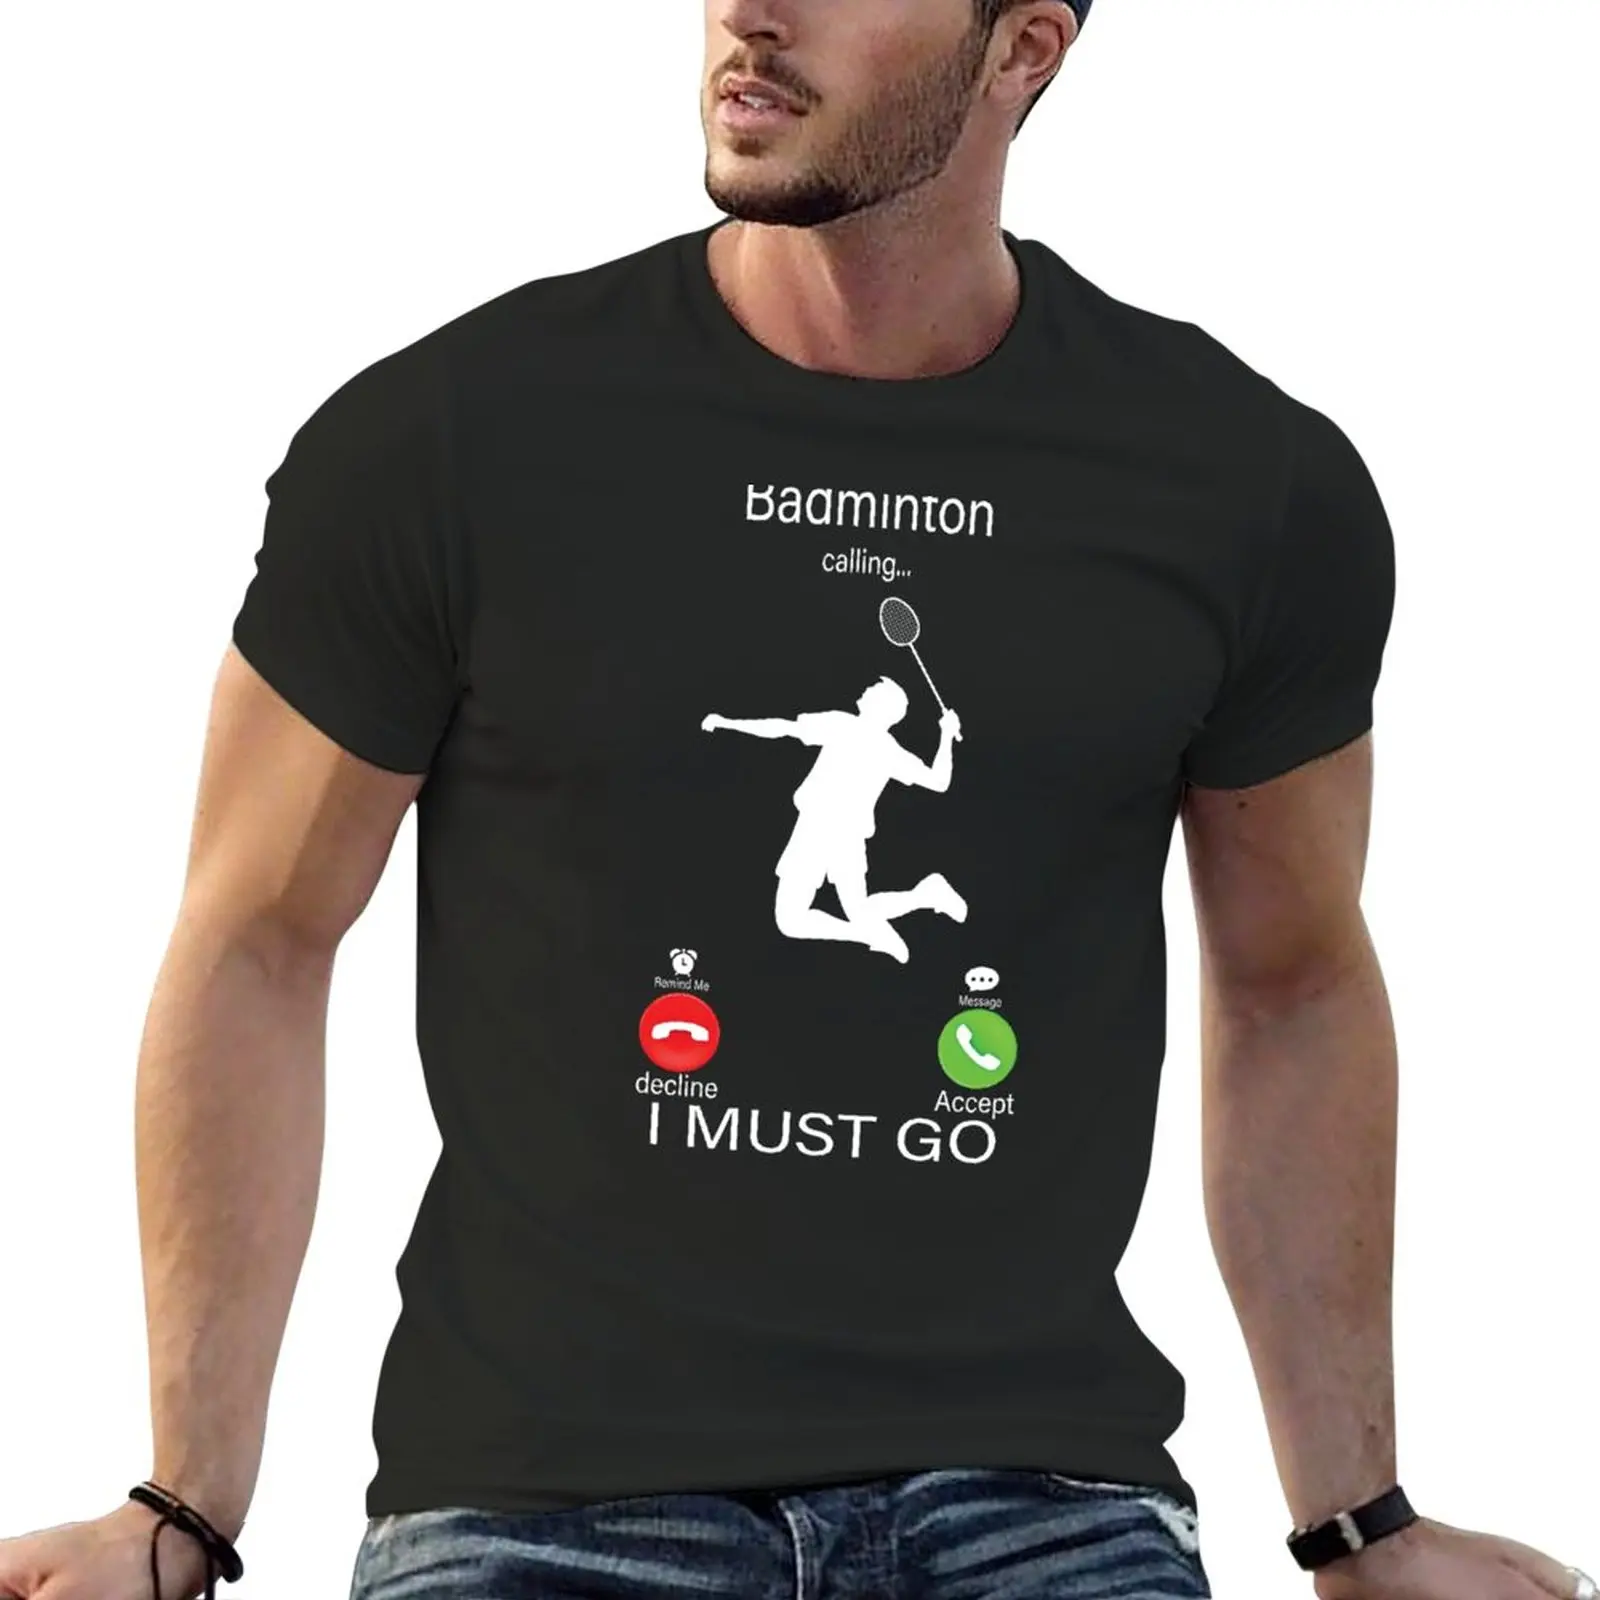 

Футболка для бадминтона с надписью «Is call And I Must Go», эстетическая одежда, футболка, мужские Графические футболки, хип-хоп